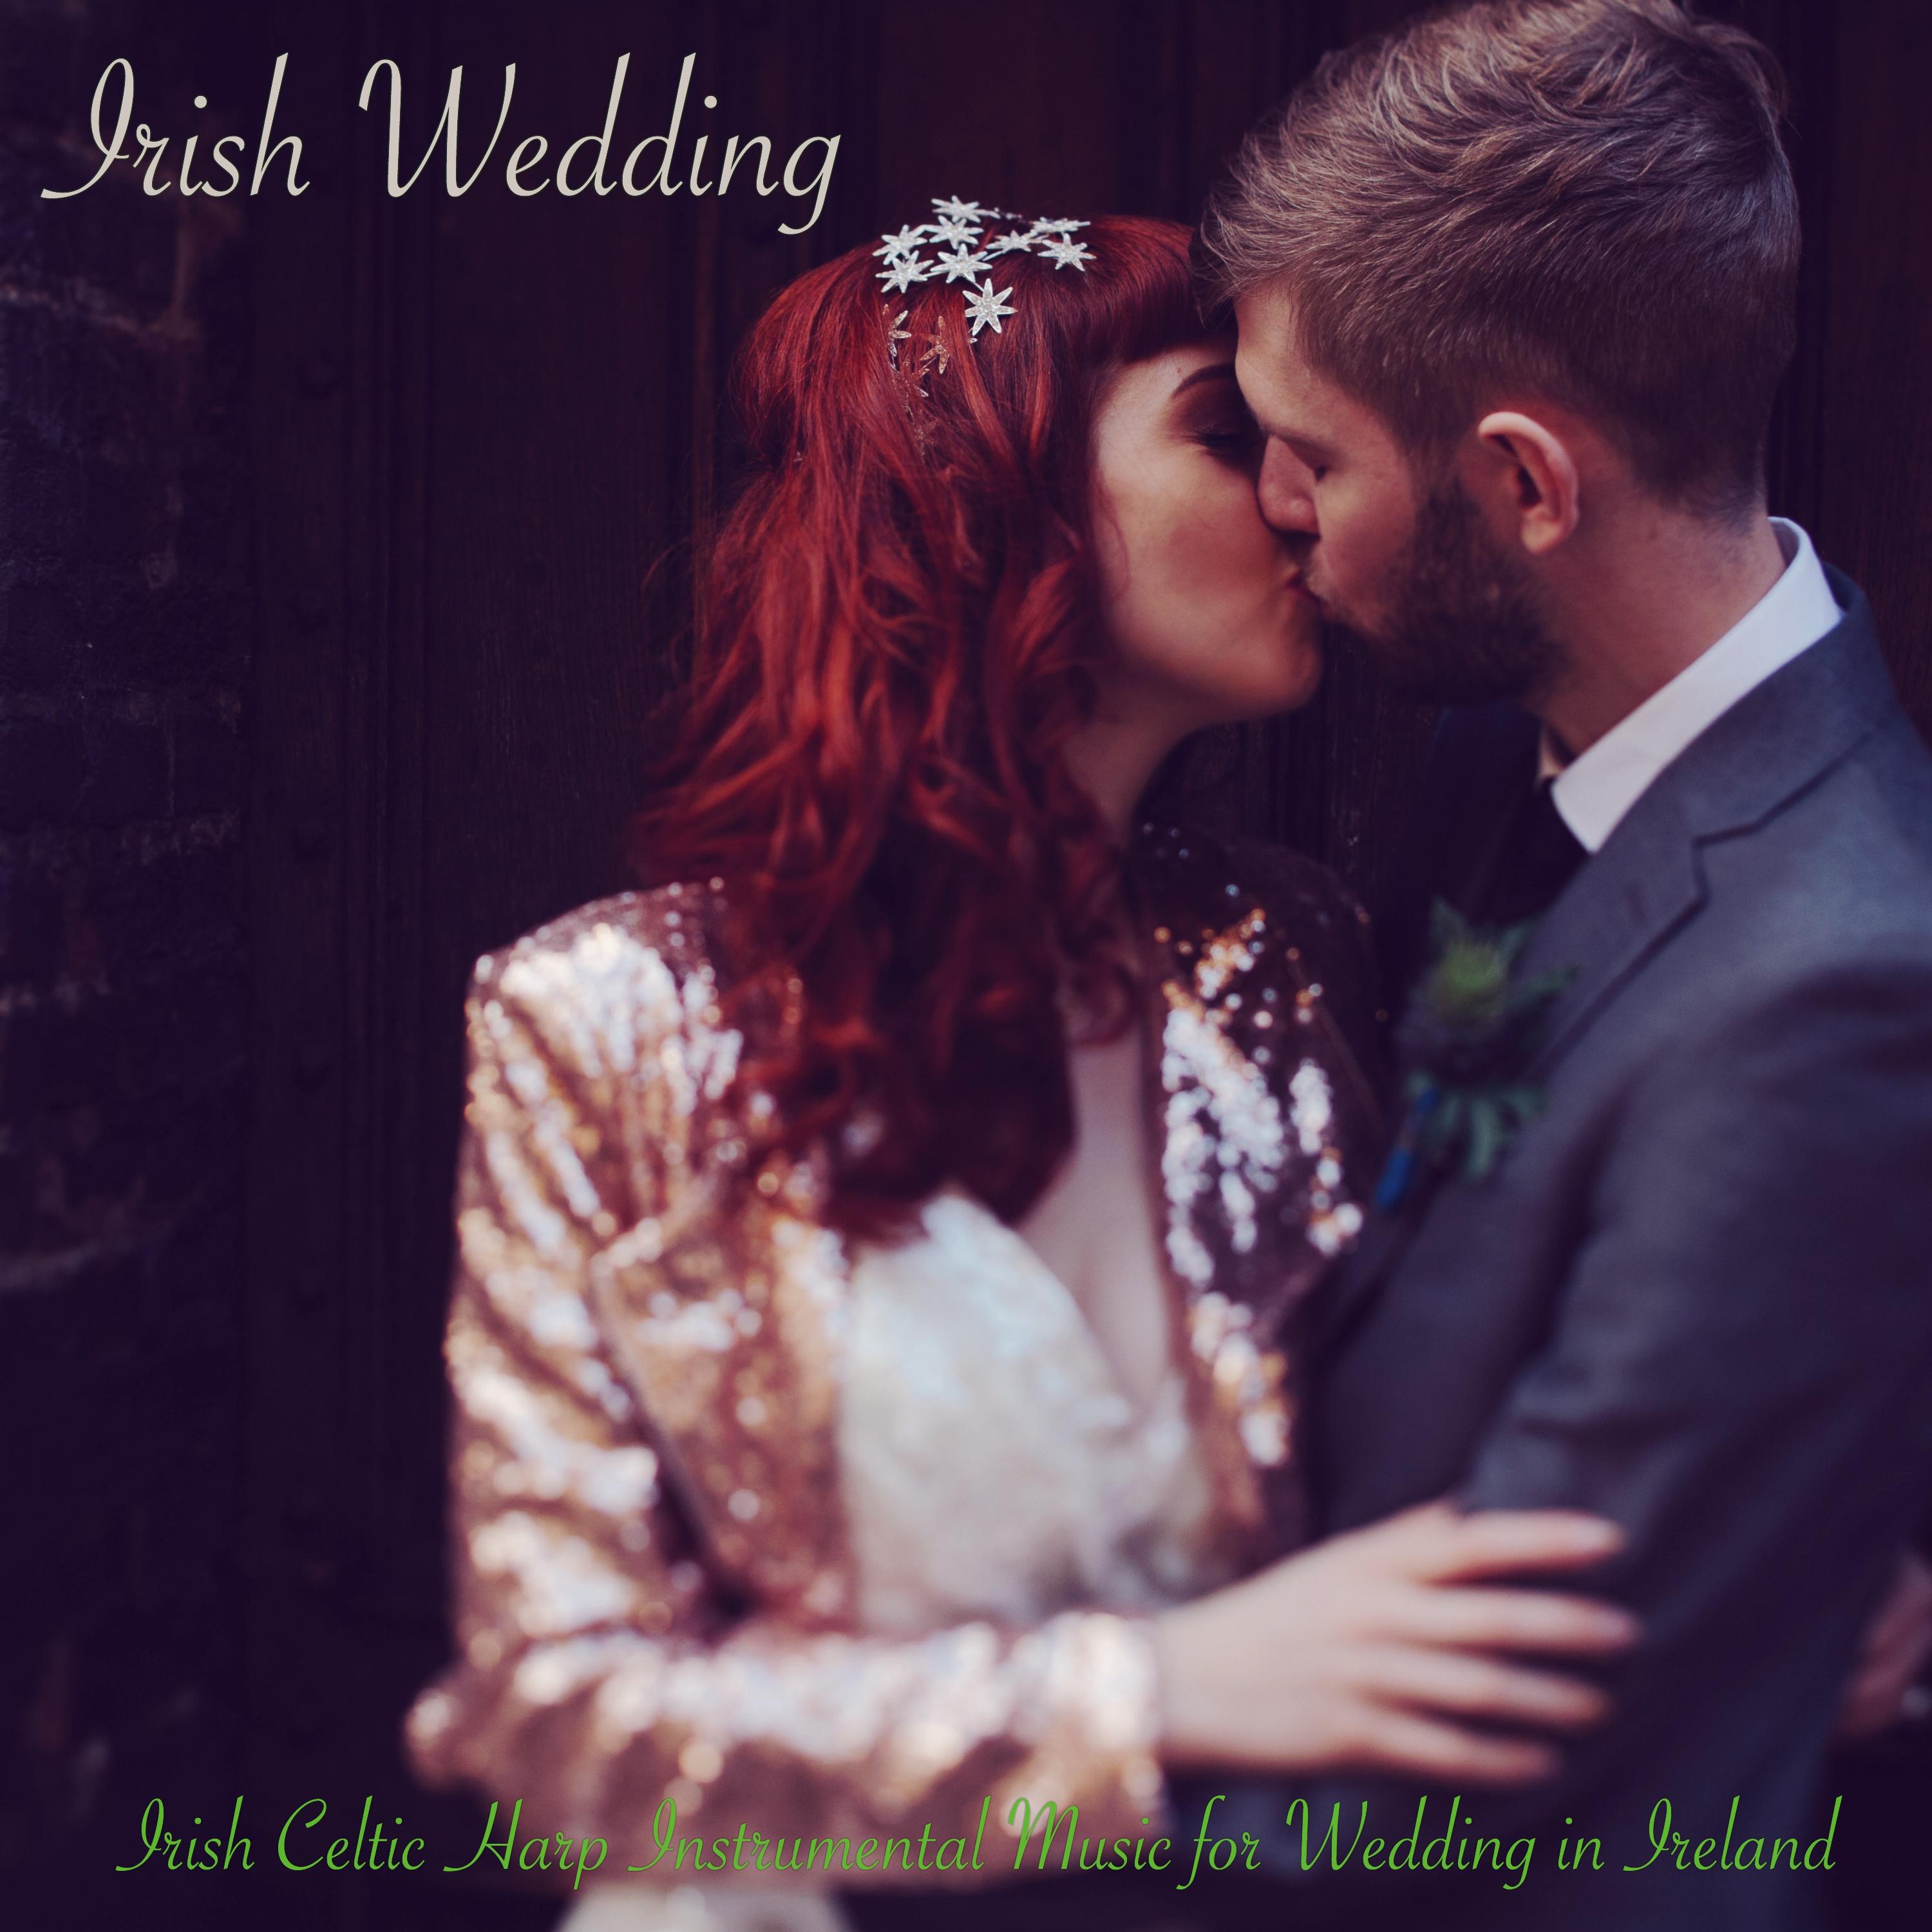 Irish Wedding  Irish Celtic Harp Instrumental Music for Wedding in Ireland